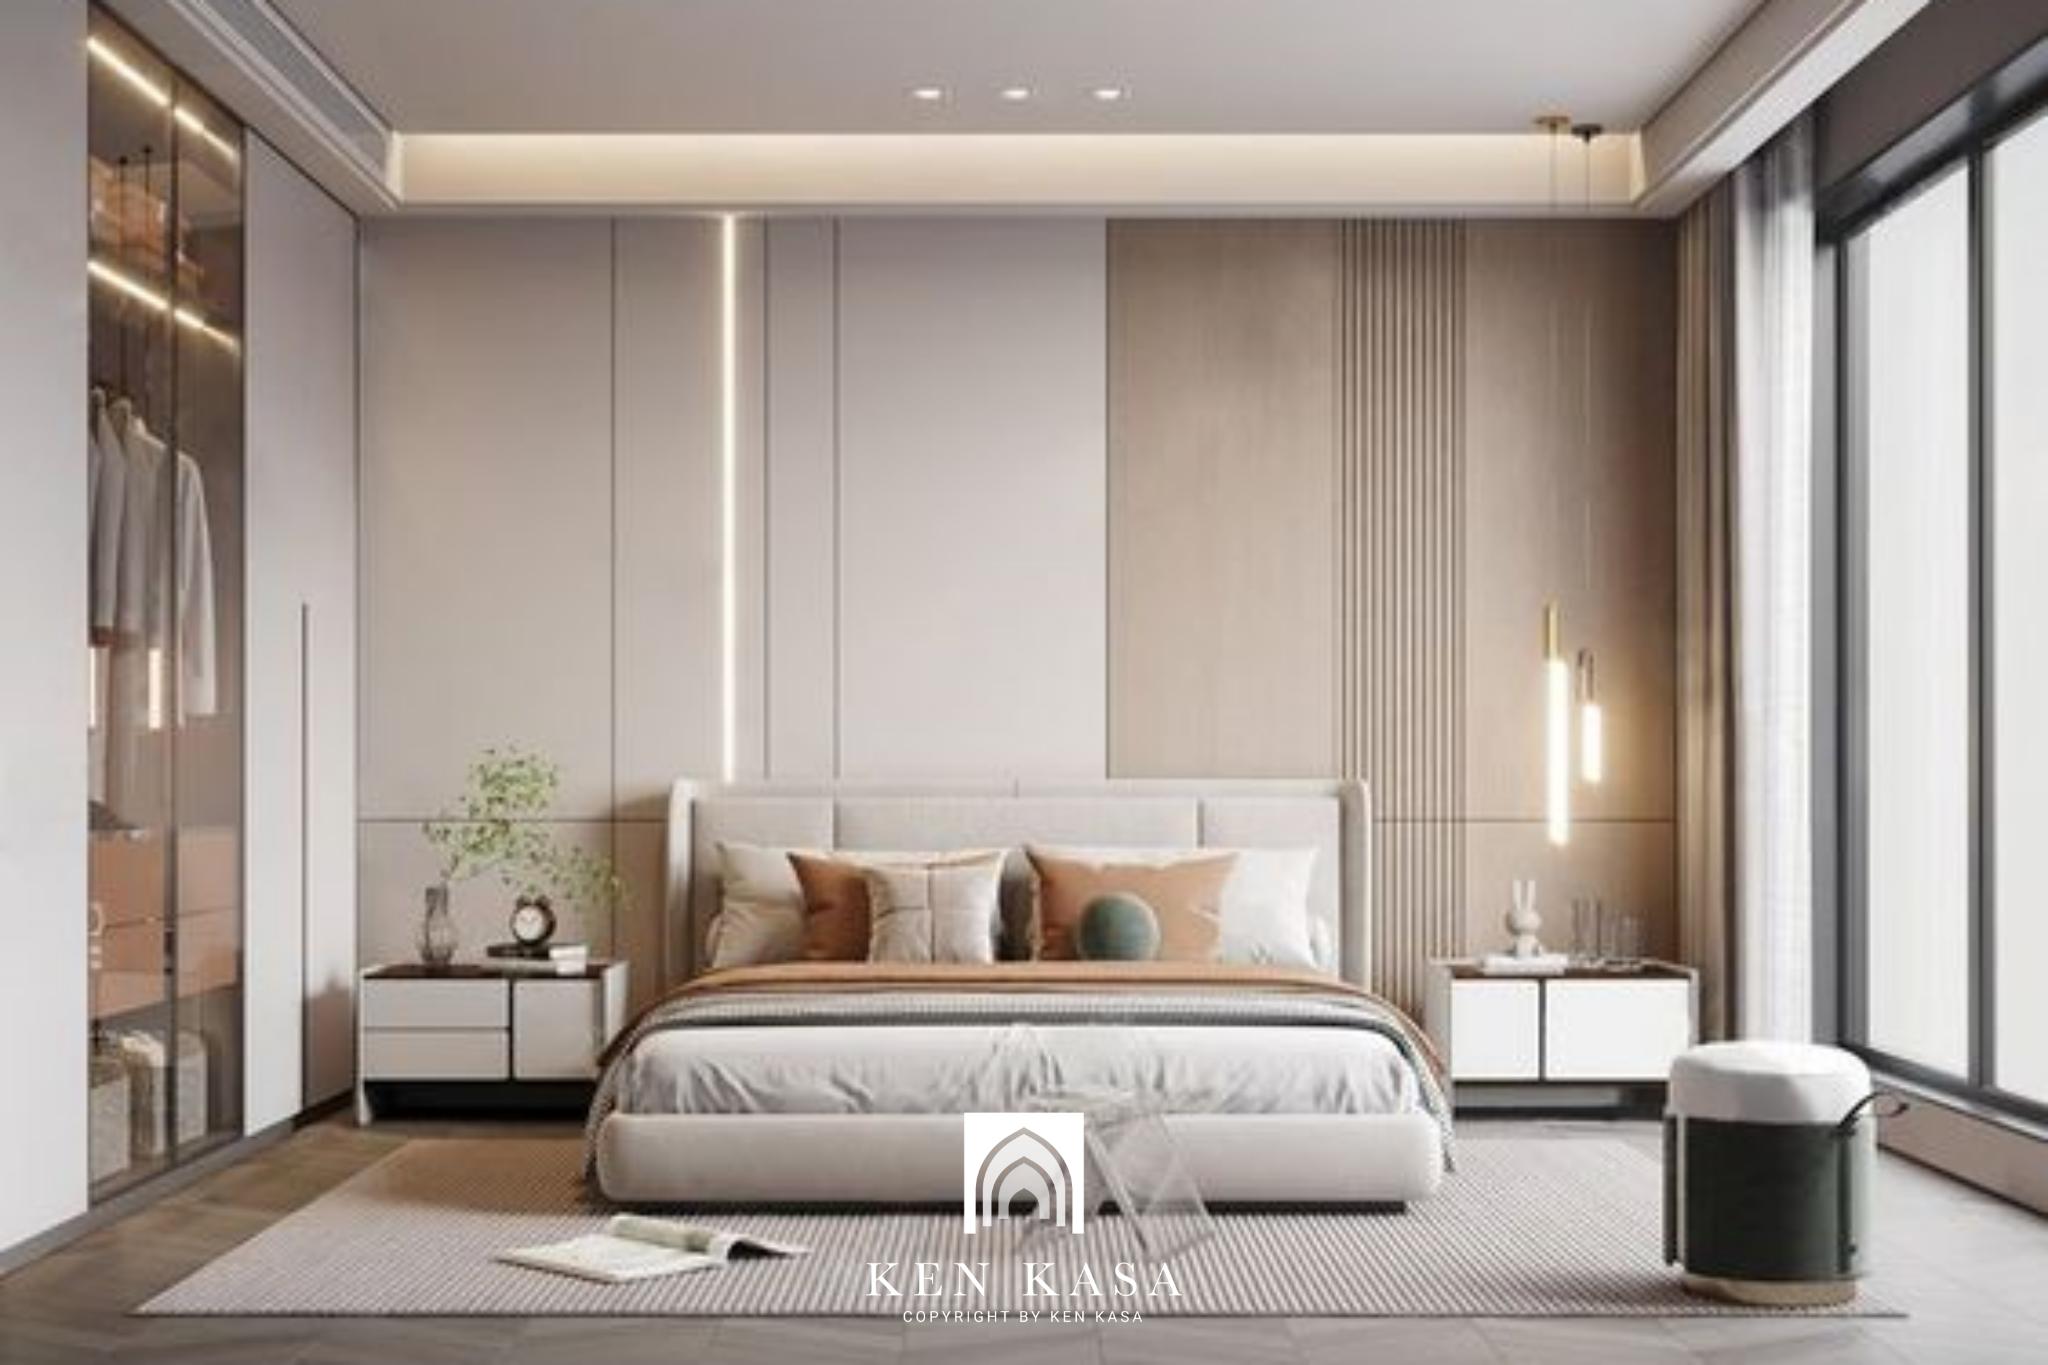 ánh sáng trong Thiết kế nội thất homestay phong cách đơn giản